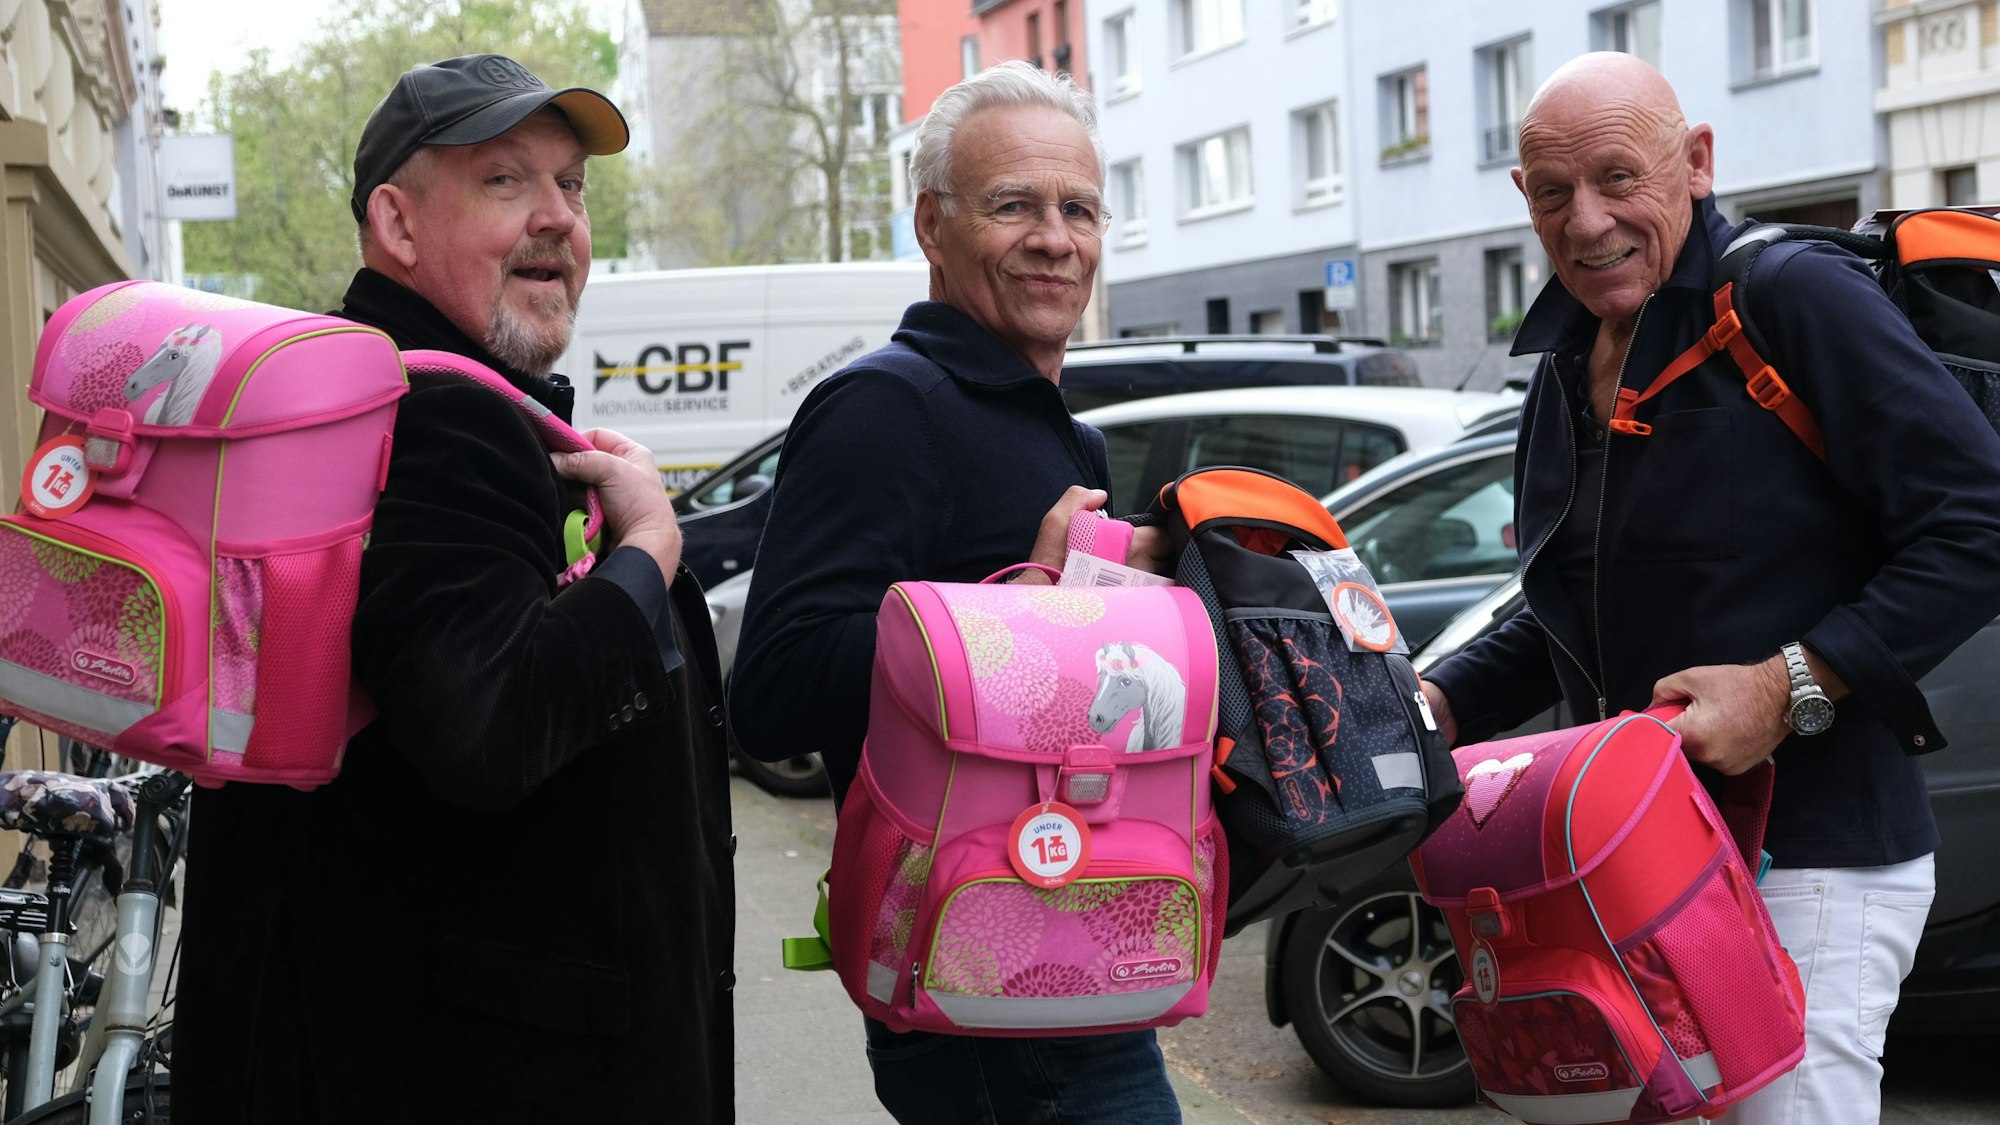 Die Schauspieler Dietmar Bär, Klaus J. Behrendt und Joe Bausch halten vier von insgesamt 774 hochwertigen Schulranzen, die der Kölner „Tatort-Verein“ an arme Kinder spendet, in der Hand.